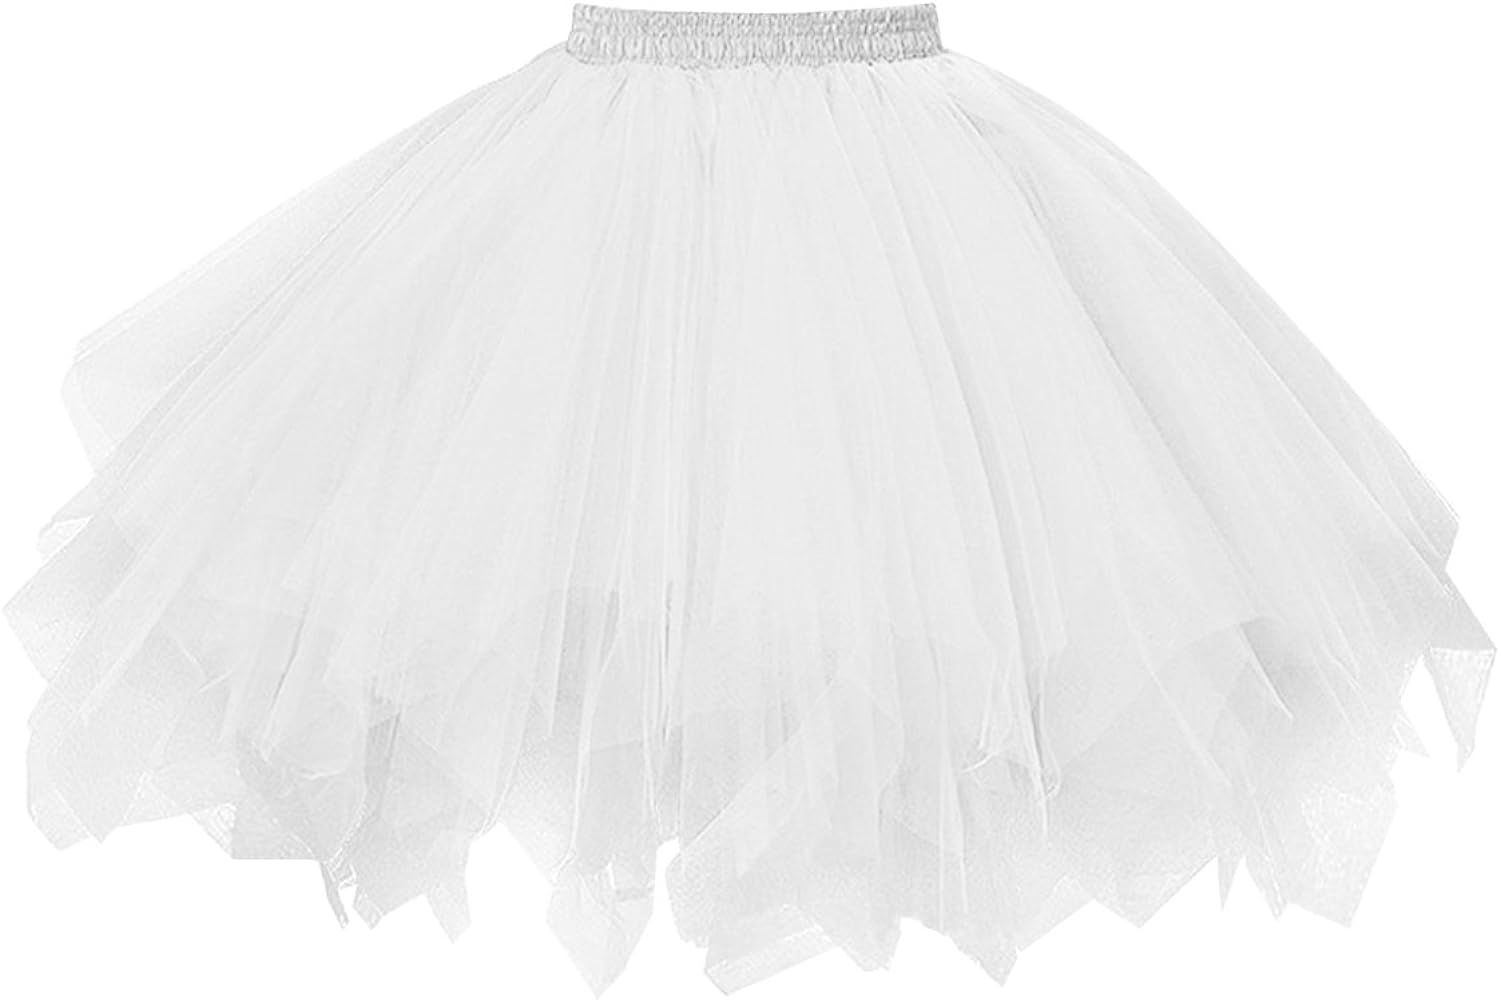 Topdress Women's 1950s Vintage Tutu Petticoat Ballet Bubble Skirt (26 Colors) | Amazon (US)